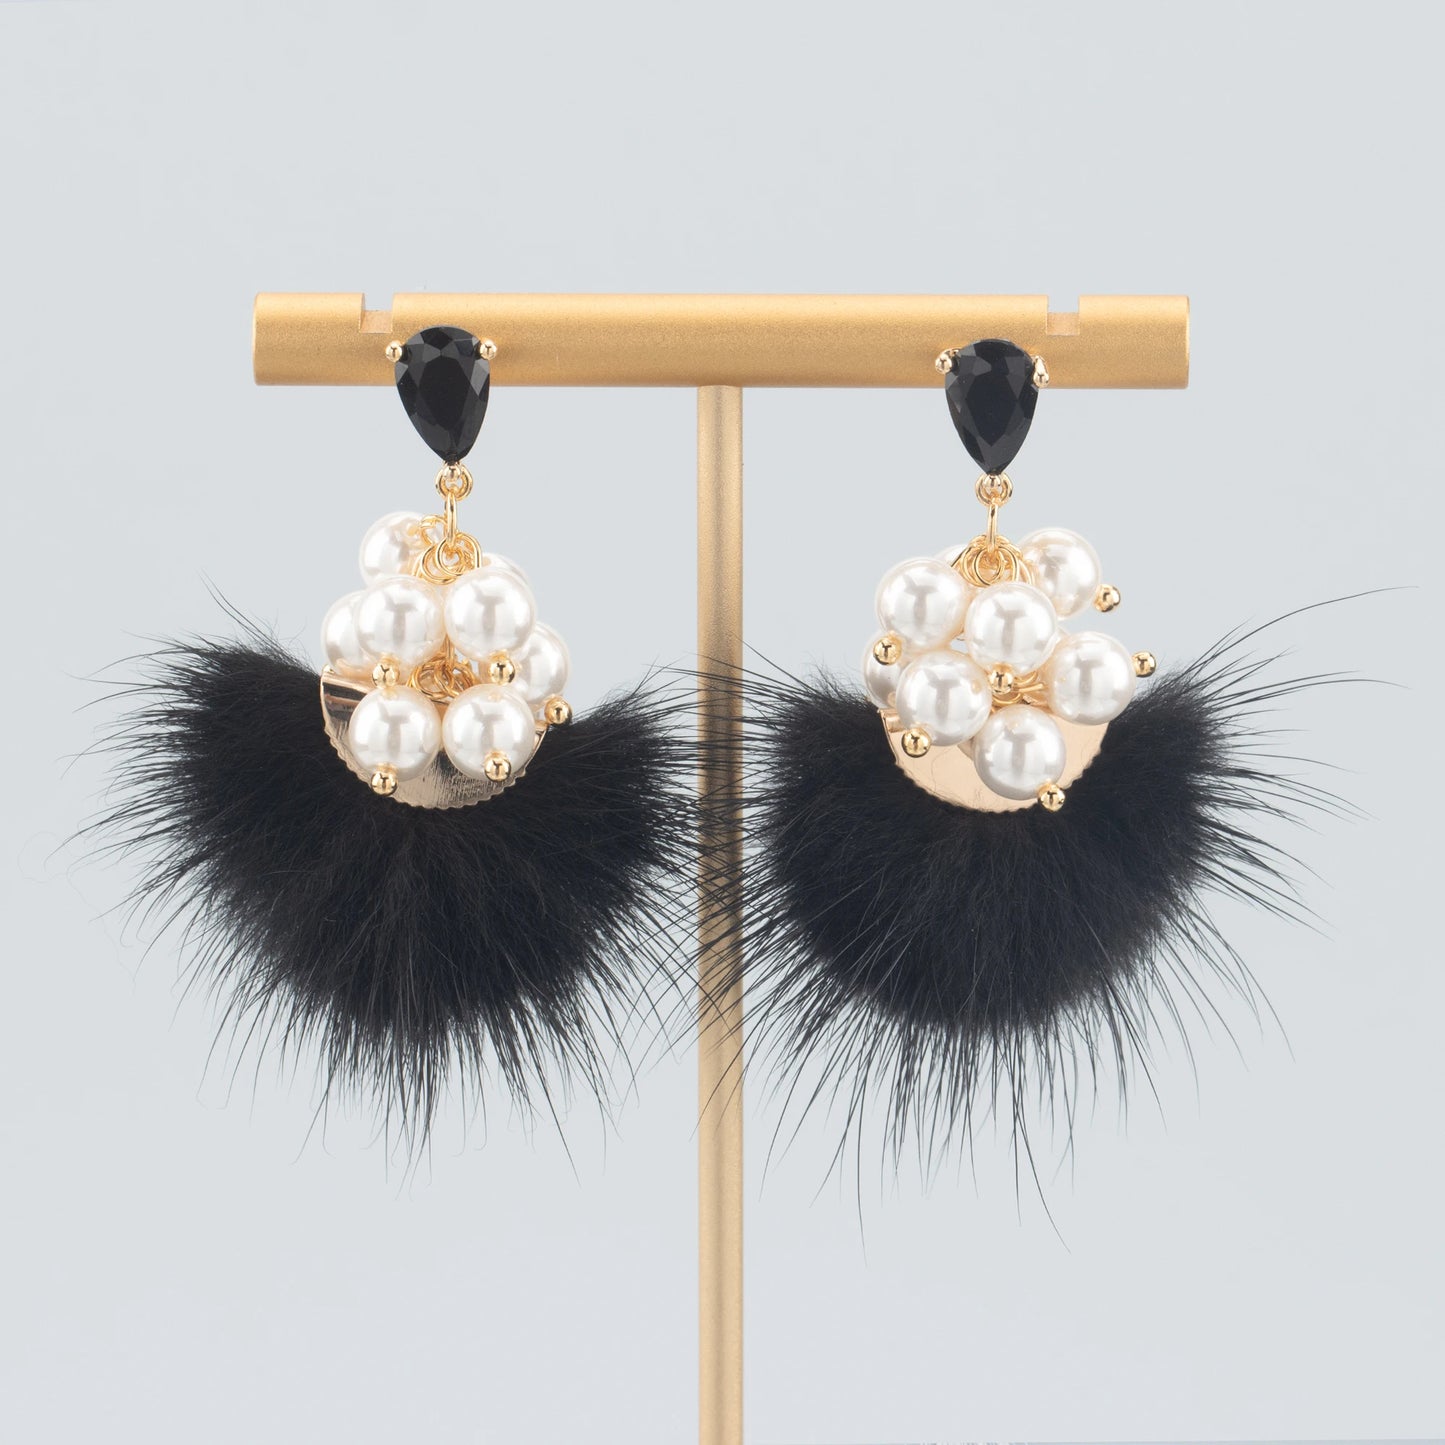 GUFEATHER L199,tassels,real fur mink,jewelry accessories,handmade,earrings accessories,jewelry making,diy earrings,10pcs/lot